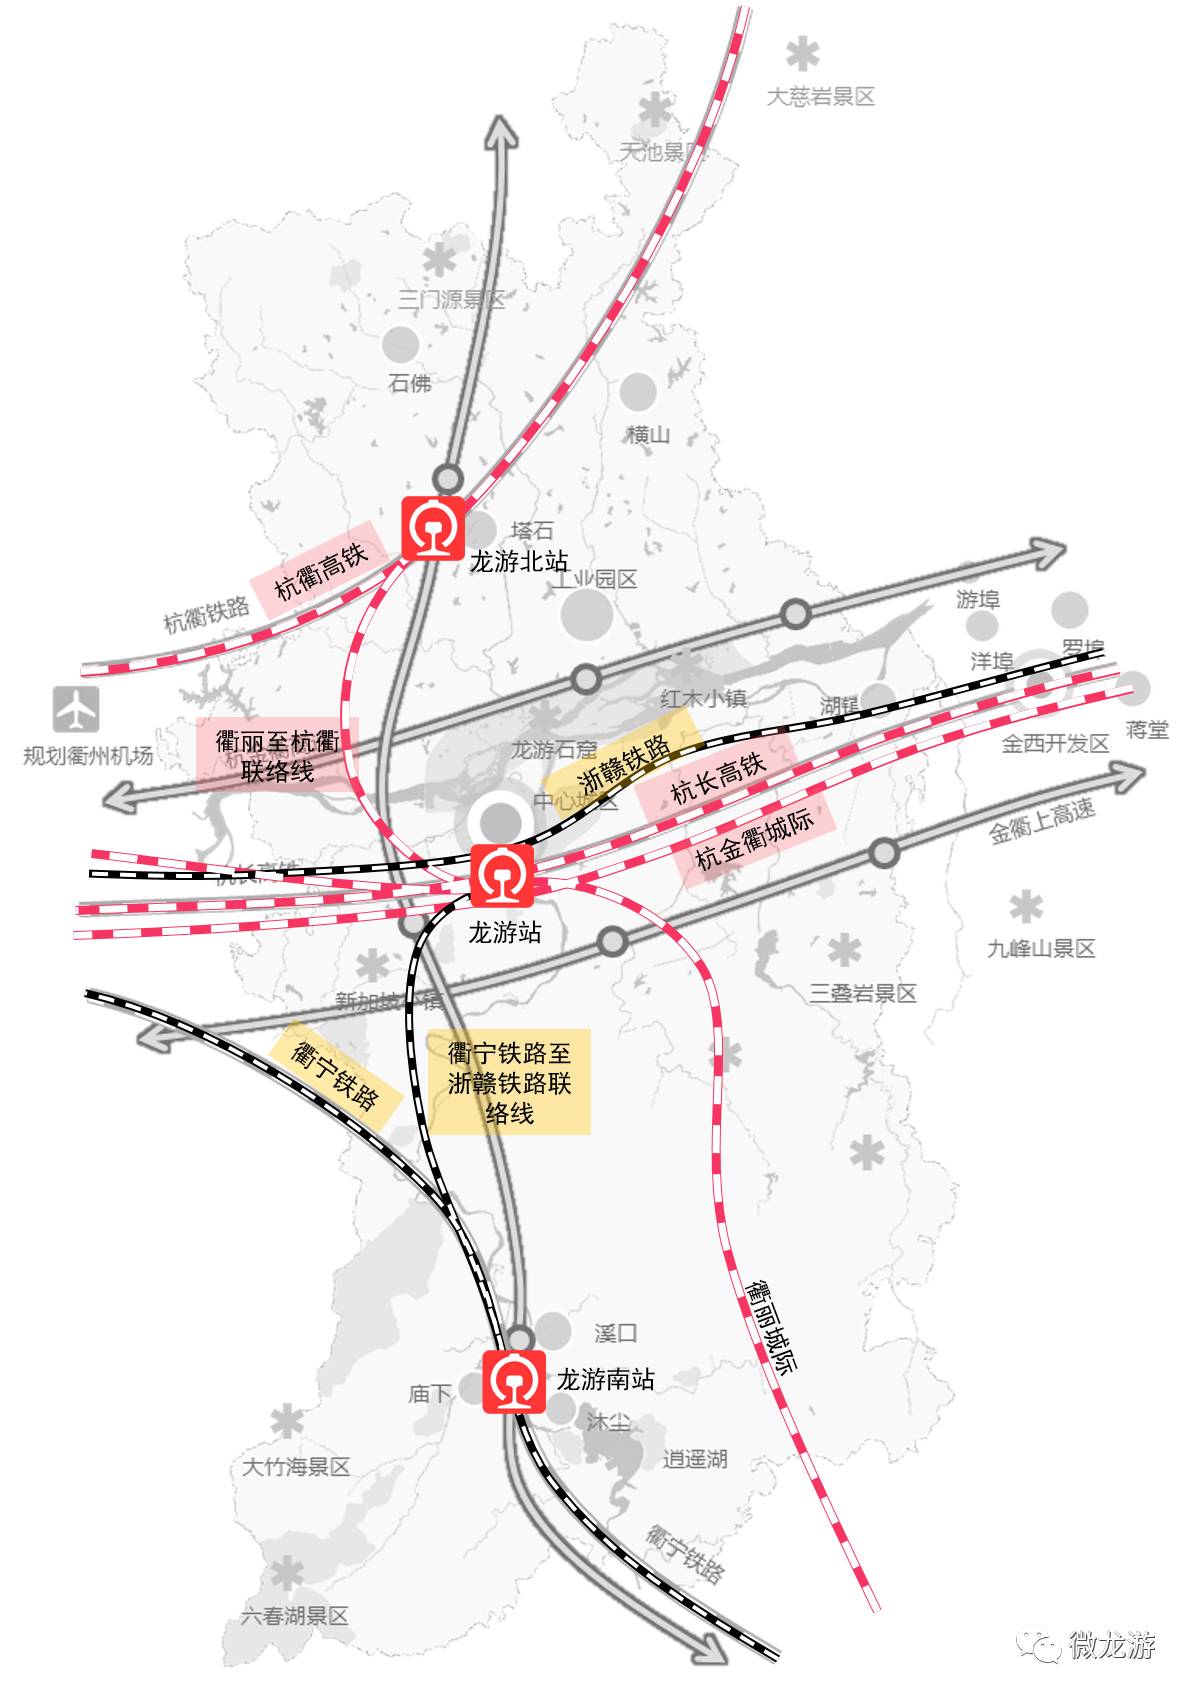 航空,物流系统:强化货运物流系统,借助衢江航道,浙赣铁路与衢州新机场